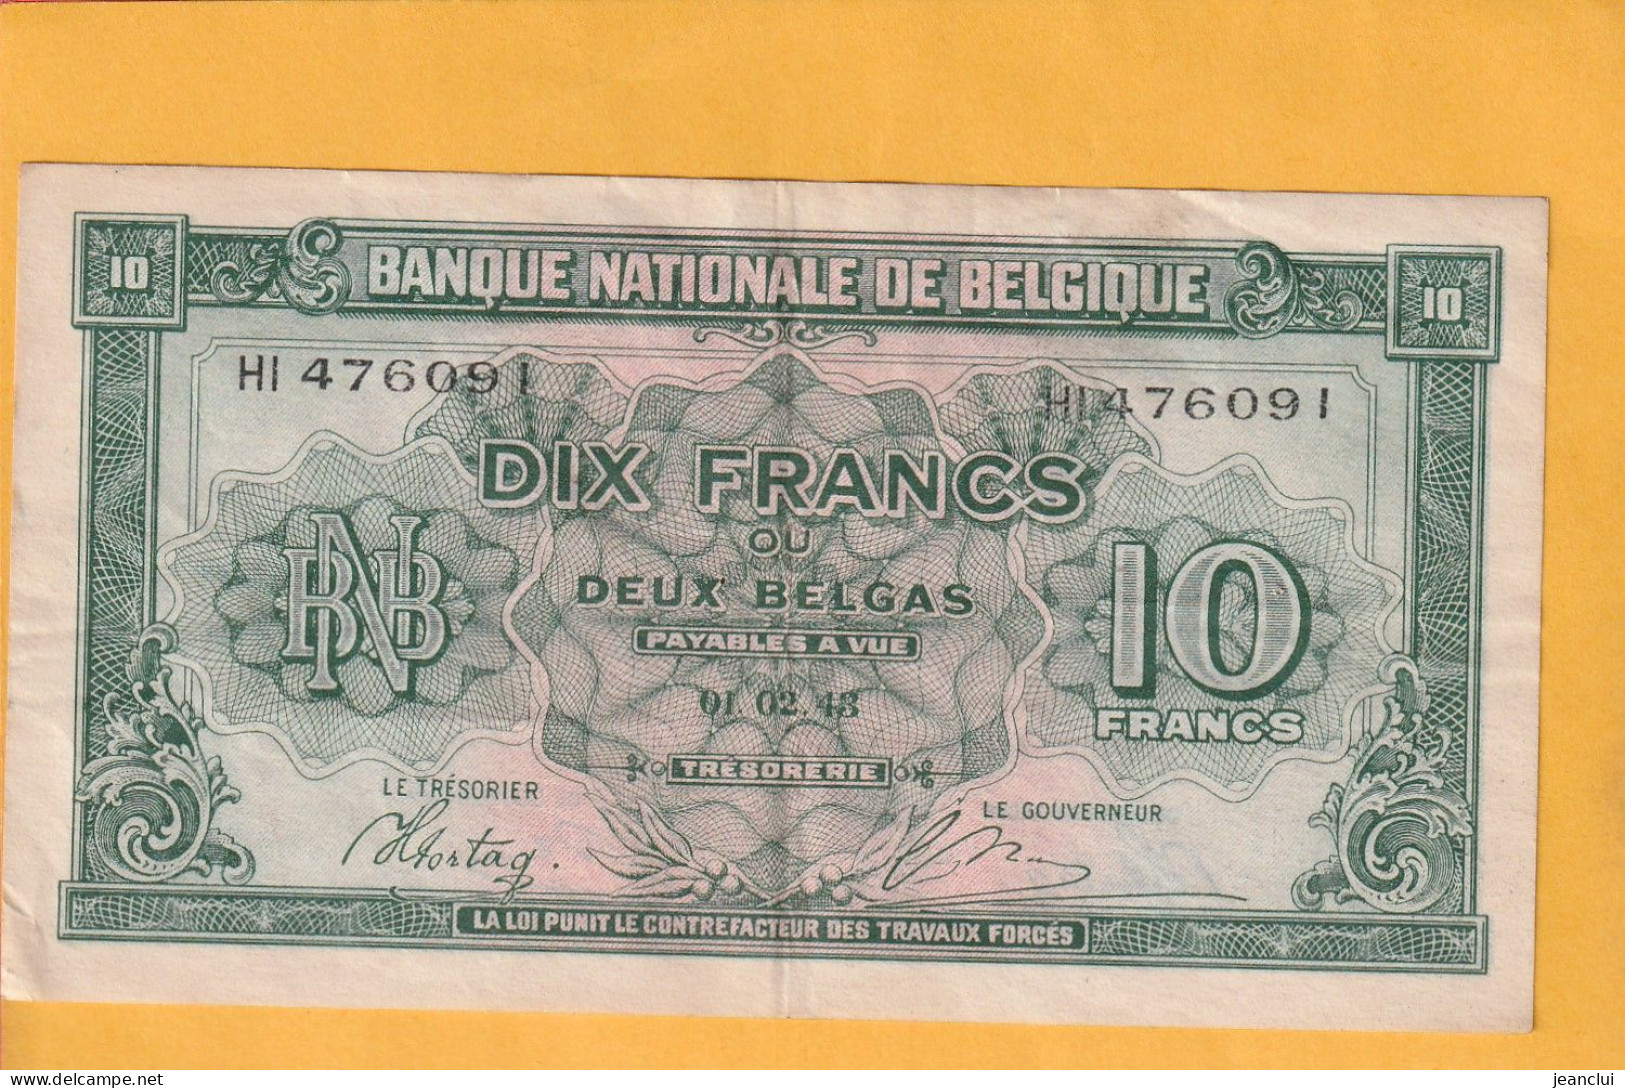 BANQUE NATIONALE DE BELGIQUE . 10 FRANCS = 2 BELGAS  . 01-02-1943 . N°  HI 476091 .  2 SCANNES .  BILLET USITE - 10 Francs-2 Belgas